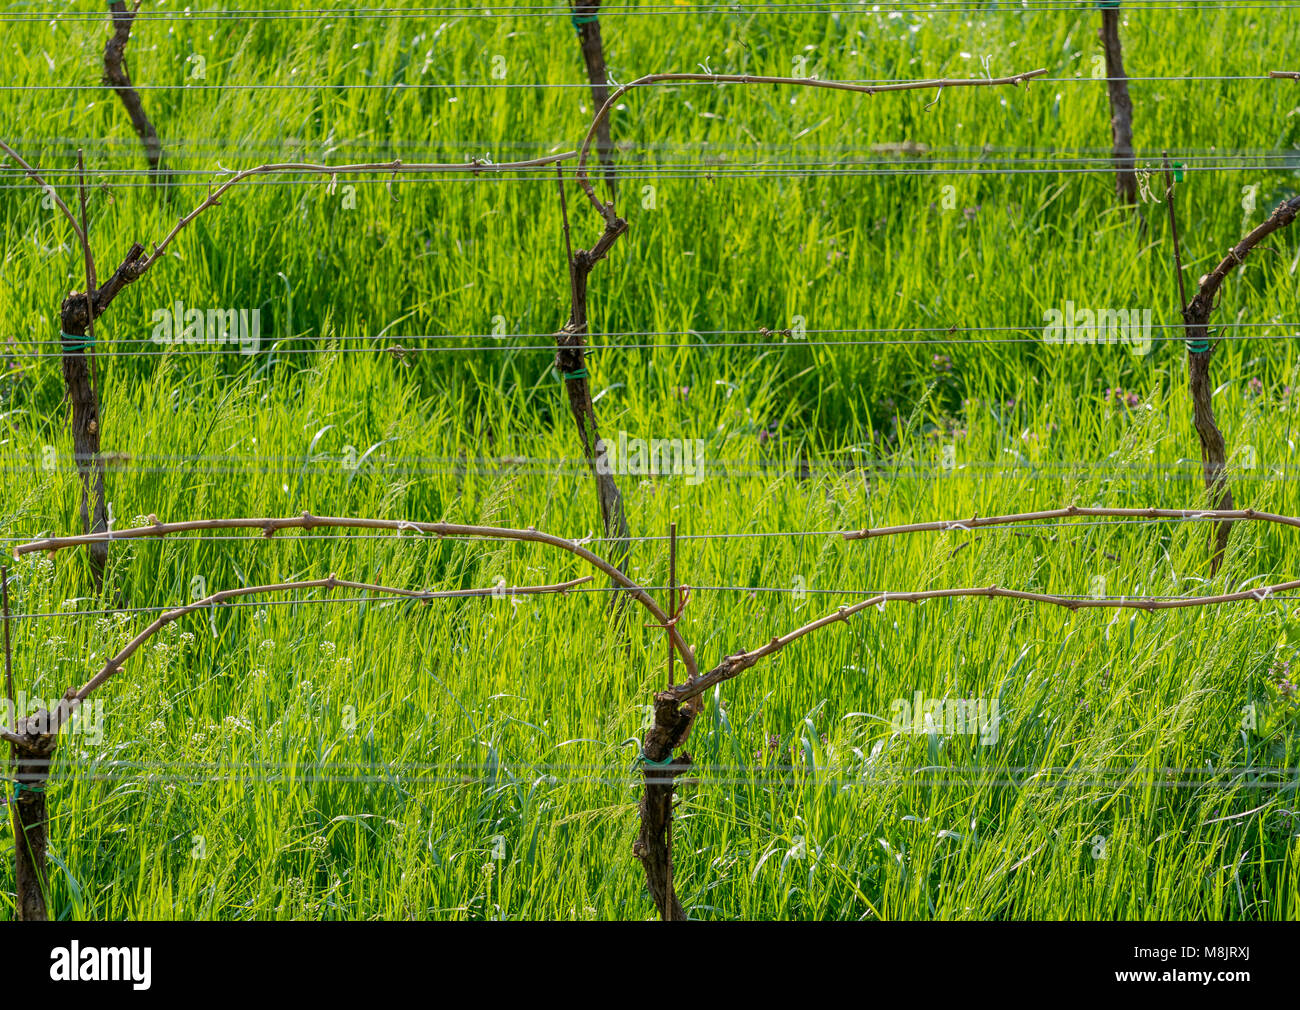 Junge grüne zarte Blätter der Trauben auf dem Hintergrund der blauen Himmel im Frühjahr. Weinberg im Frühjahr. Die Guyot Methode der Rebe Ausbildung Stockfoto